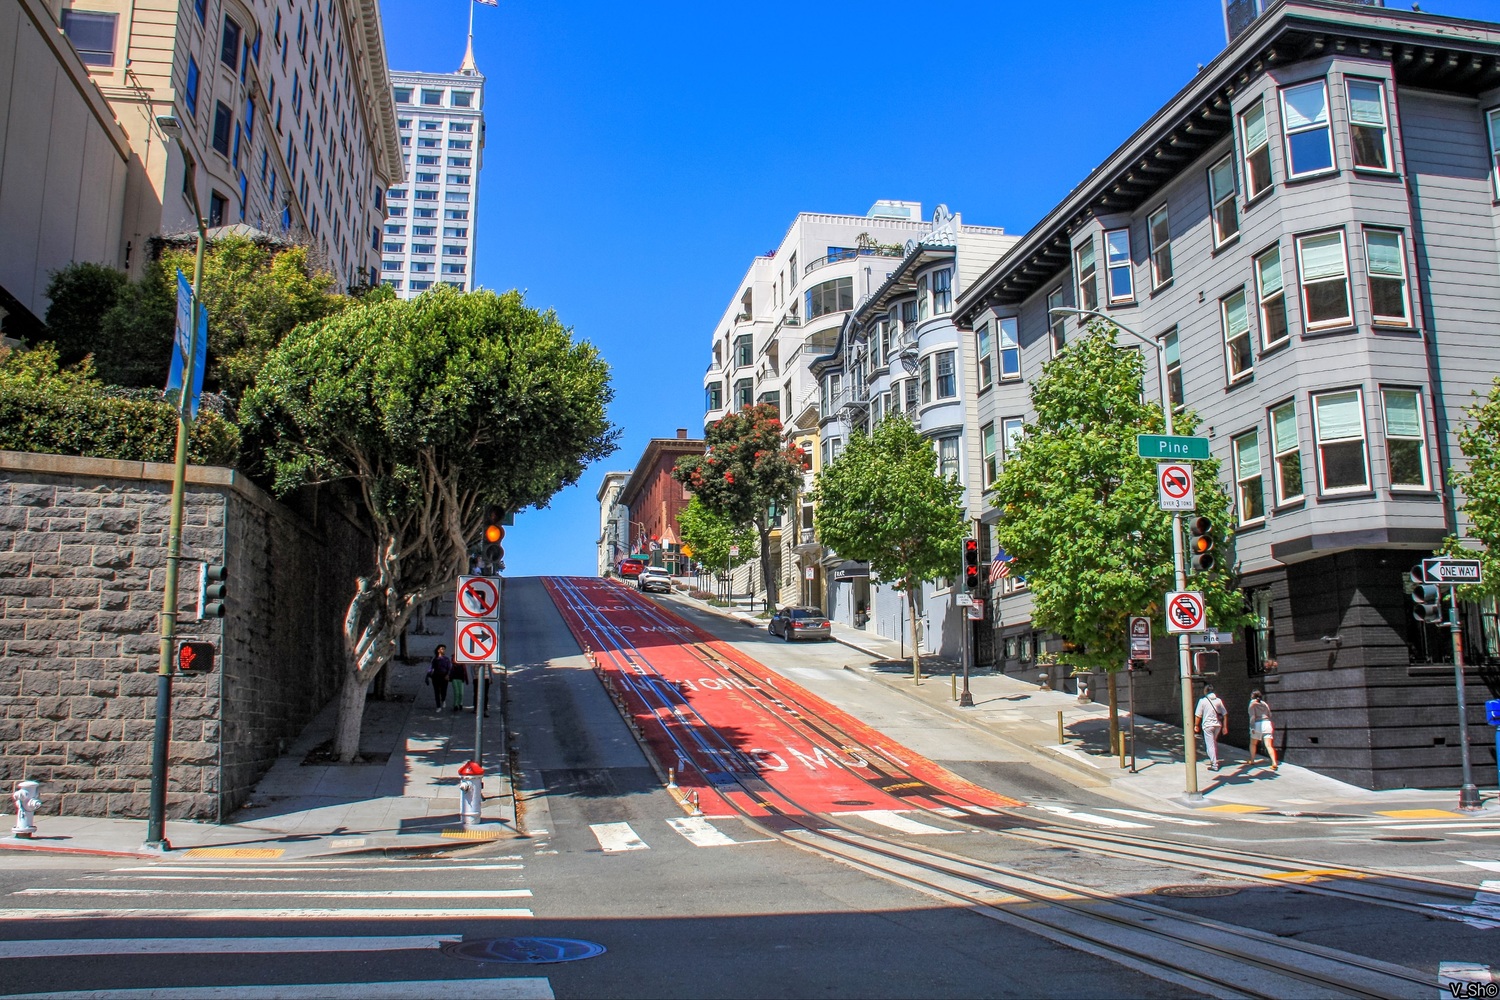 Сан-Франциско, область залива — Линии и инфраструктура кабельного трамвая